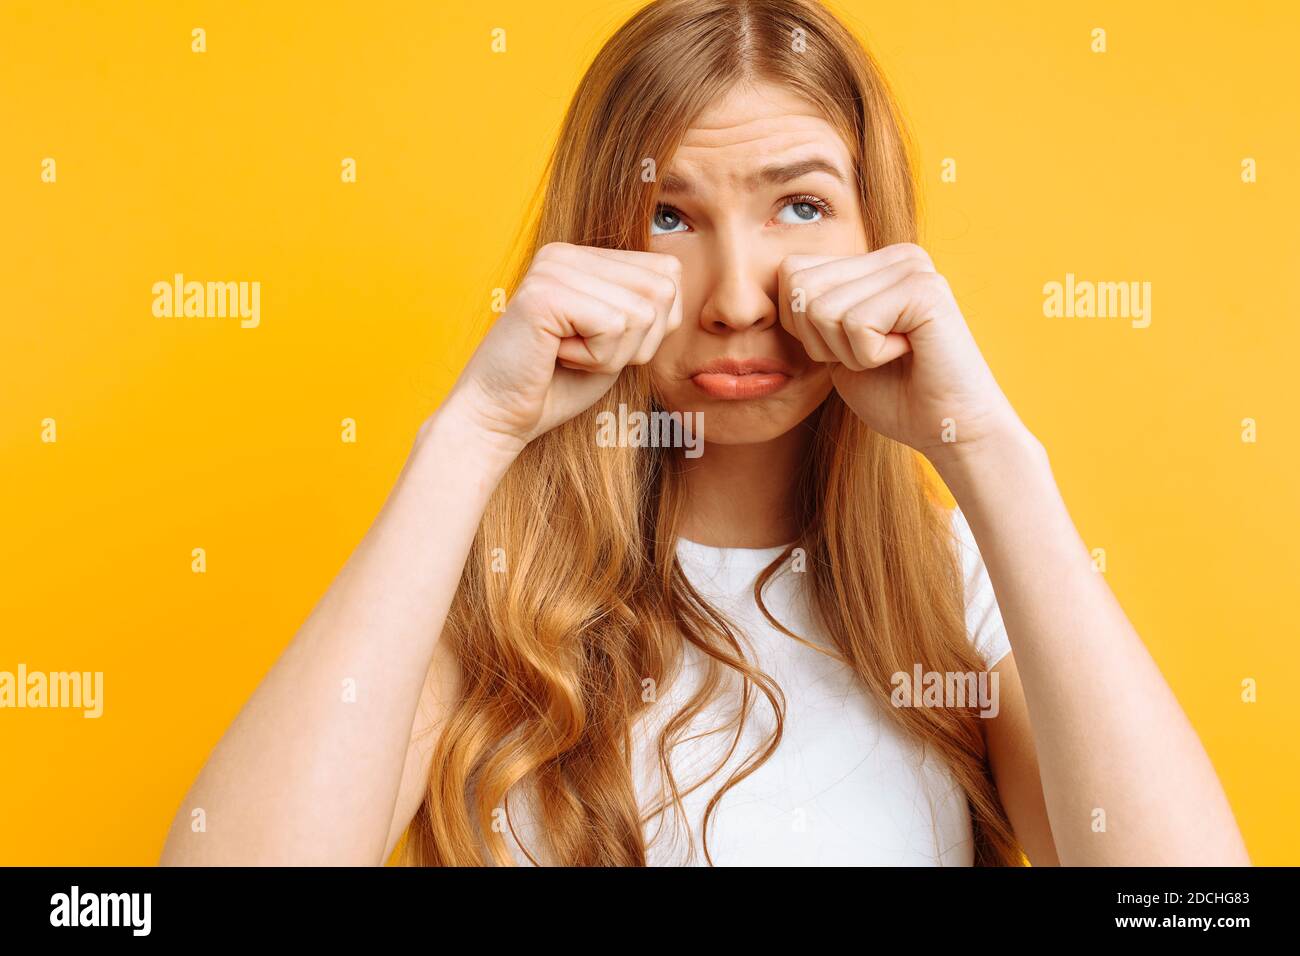 beautiful girl upset, woman crying on yellow background, bad mood Stock Photo